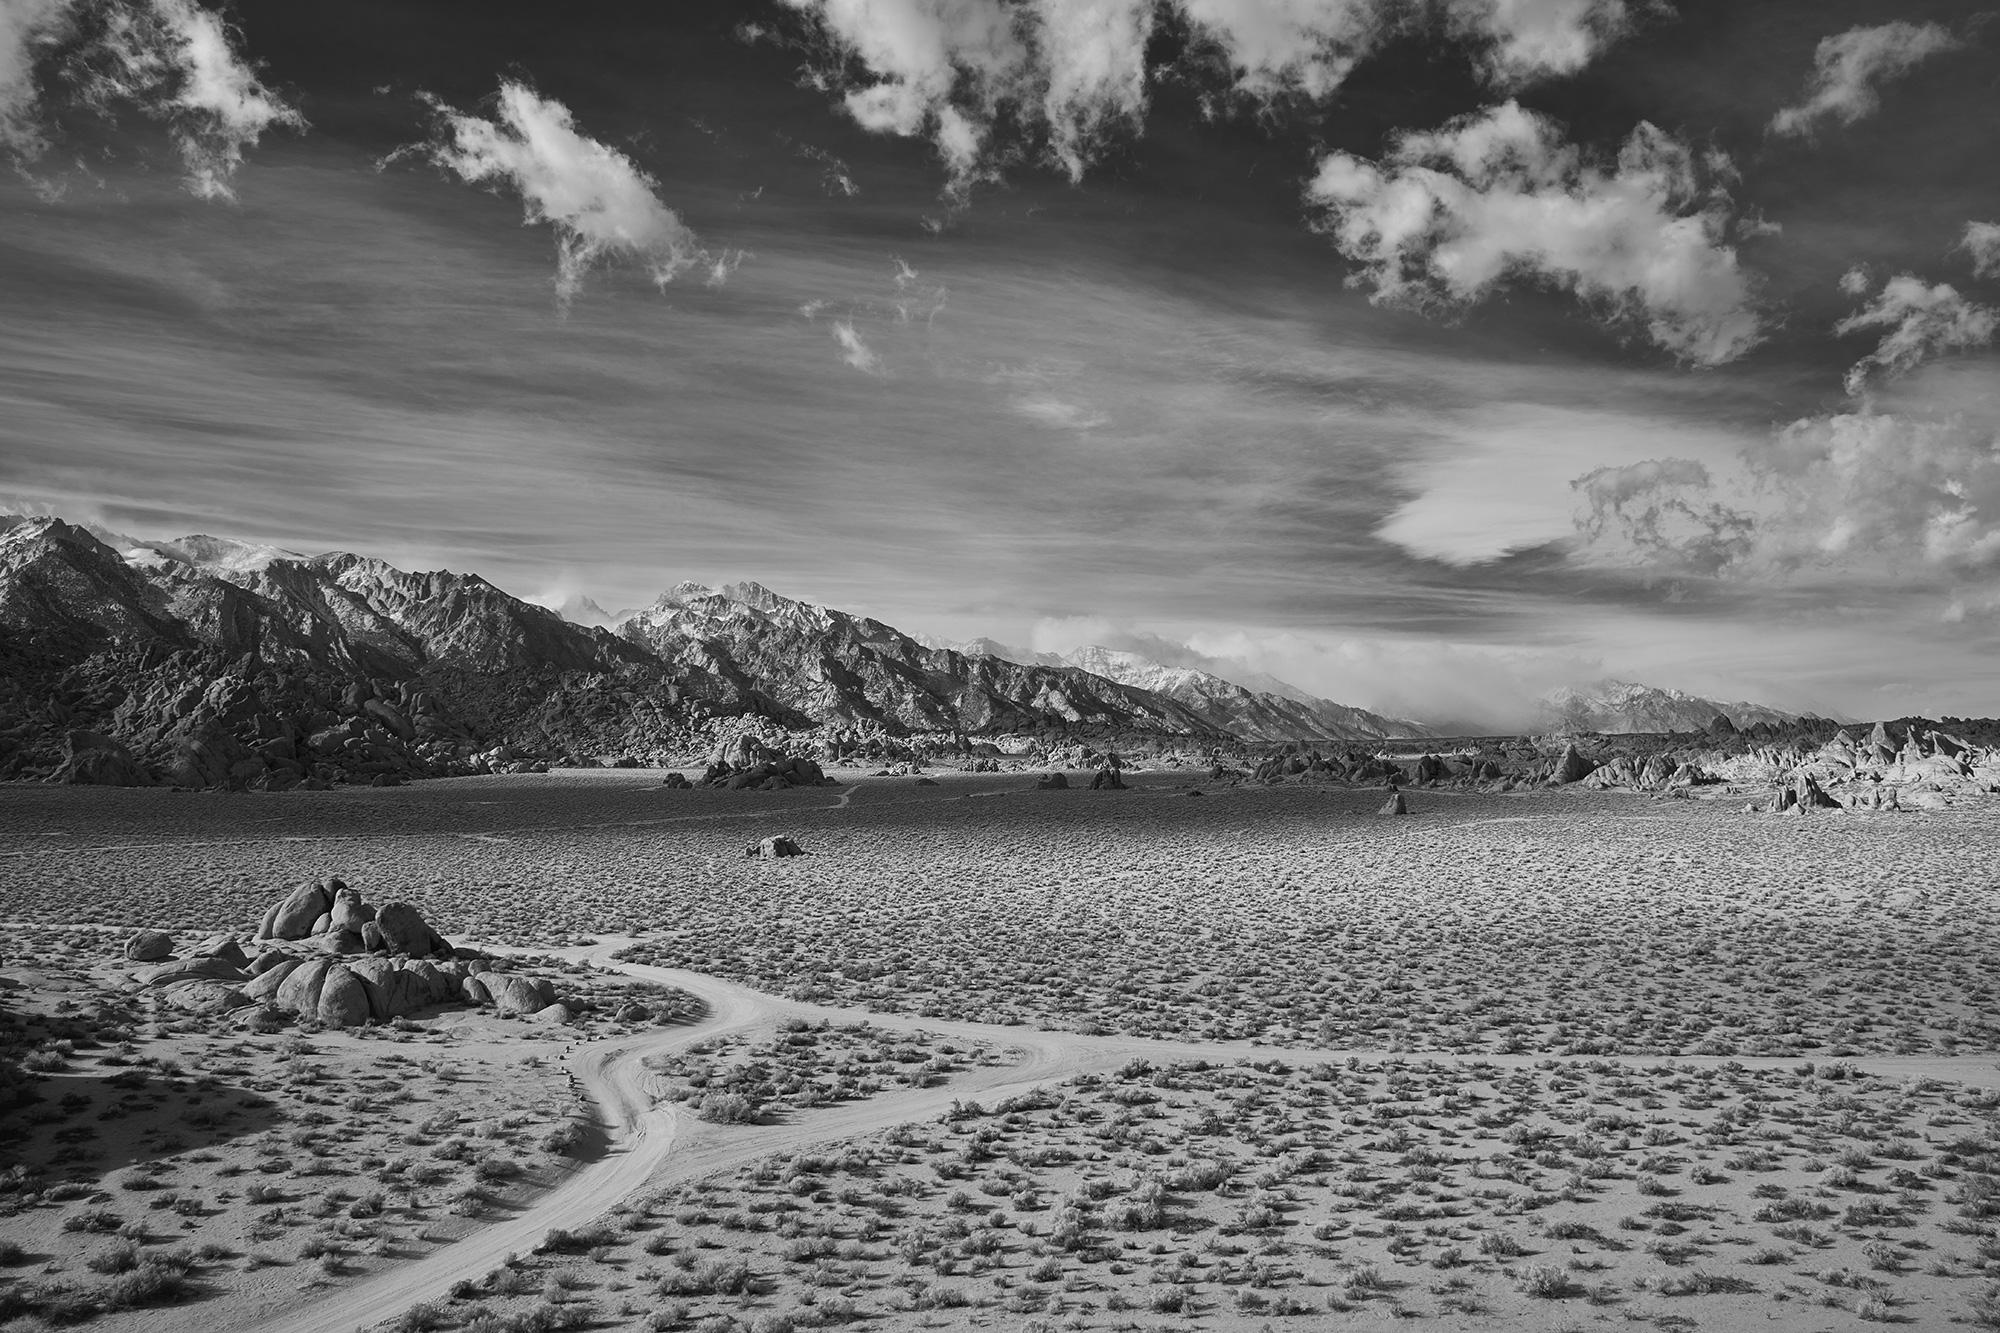 Frank Schott Black and White Photograph - Desert Crossing - large scale black and white photo of dramatic desert landscape